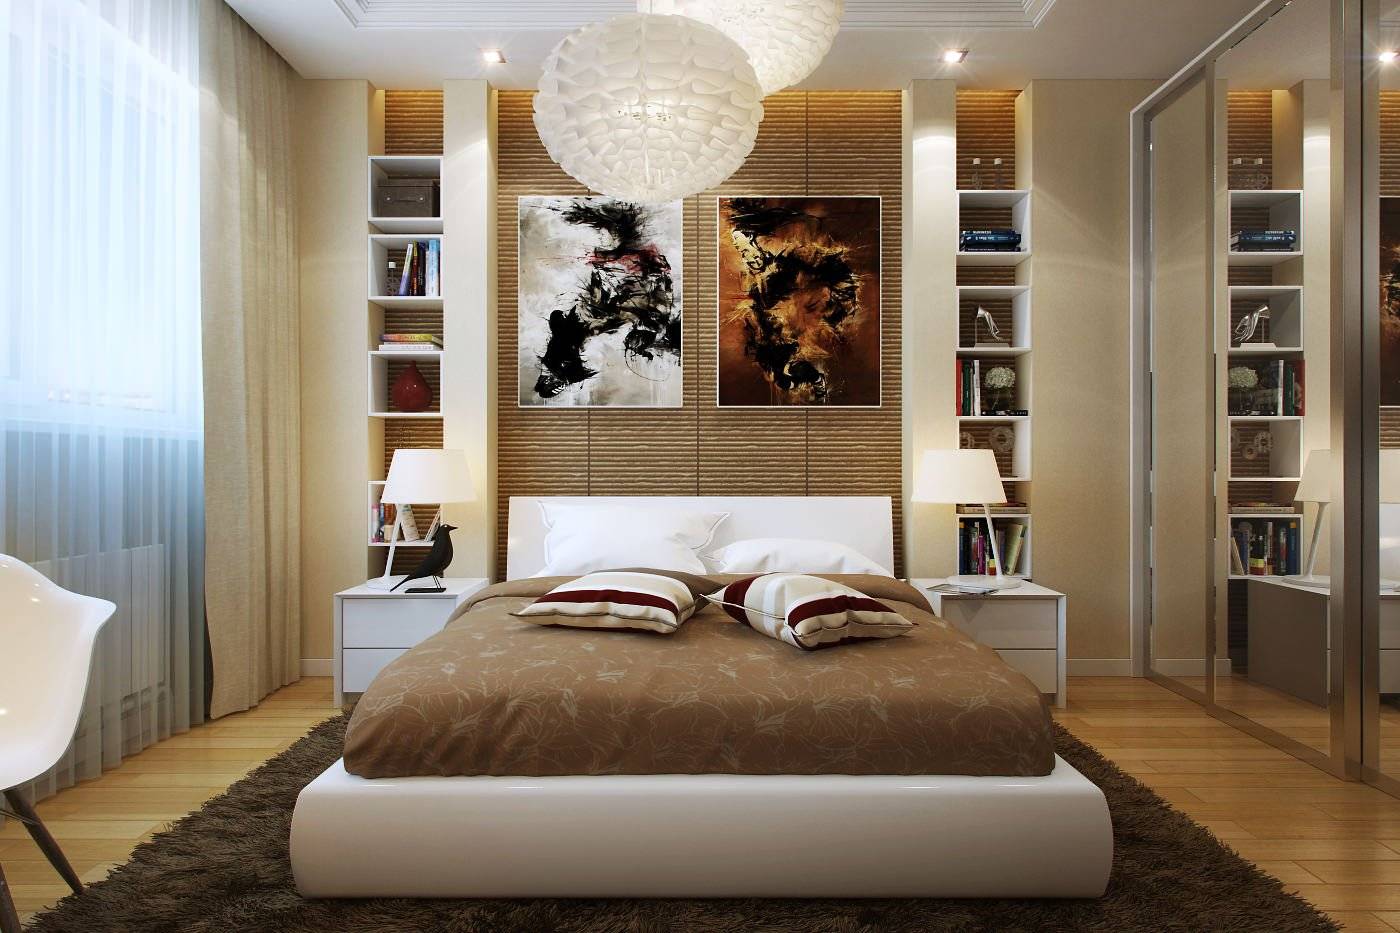 Дизайн маленькой спальни, как обустроить своими руками, идеи интерьера, в том числе для площади 10 кв м + фото
дизайн маленькой спальни, как обустроить своими руками, идеи интерьера, в том числе для площади 10 кв м + фото